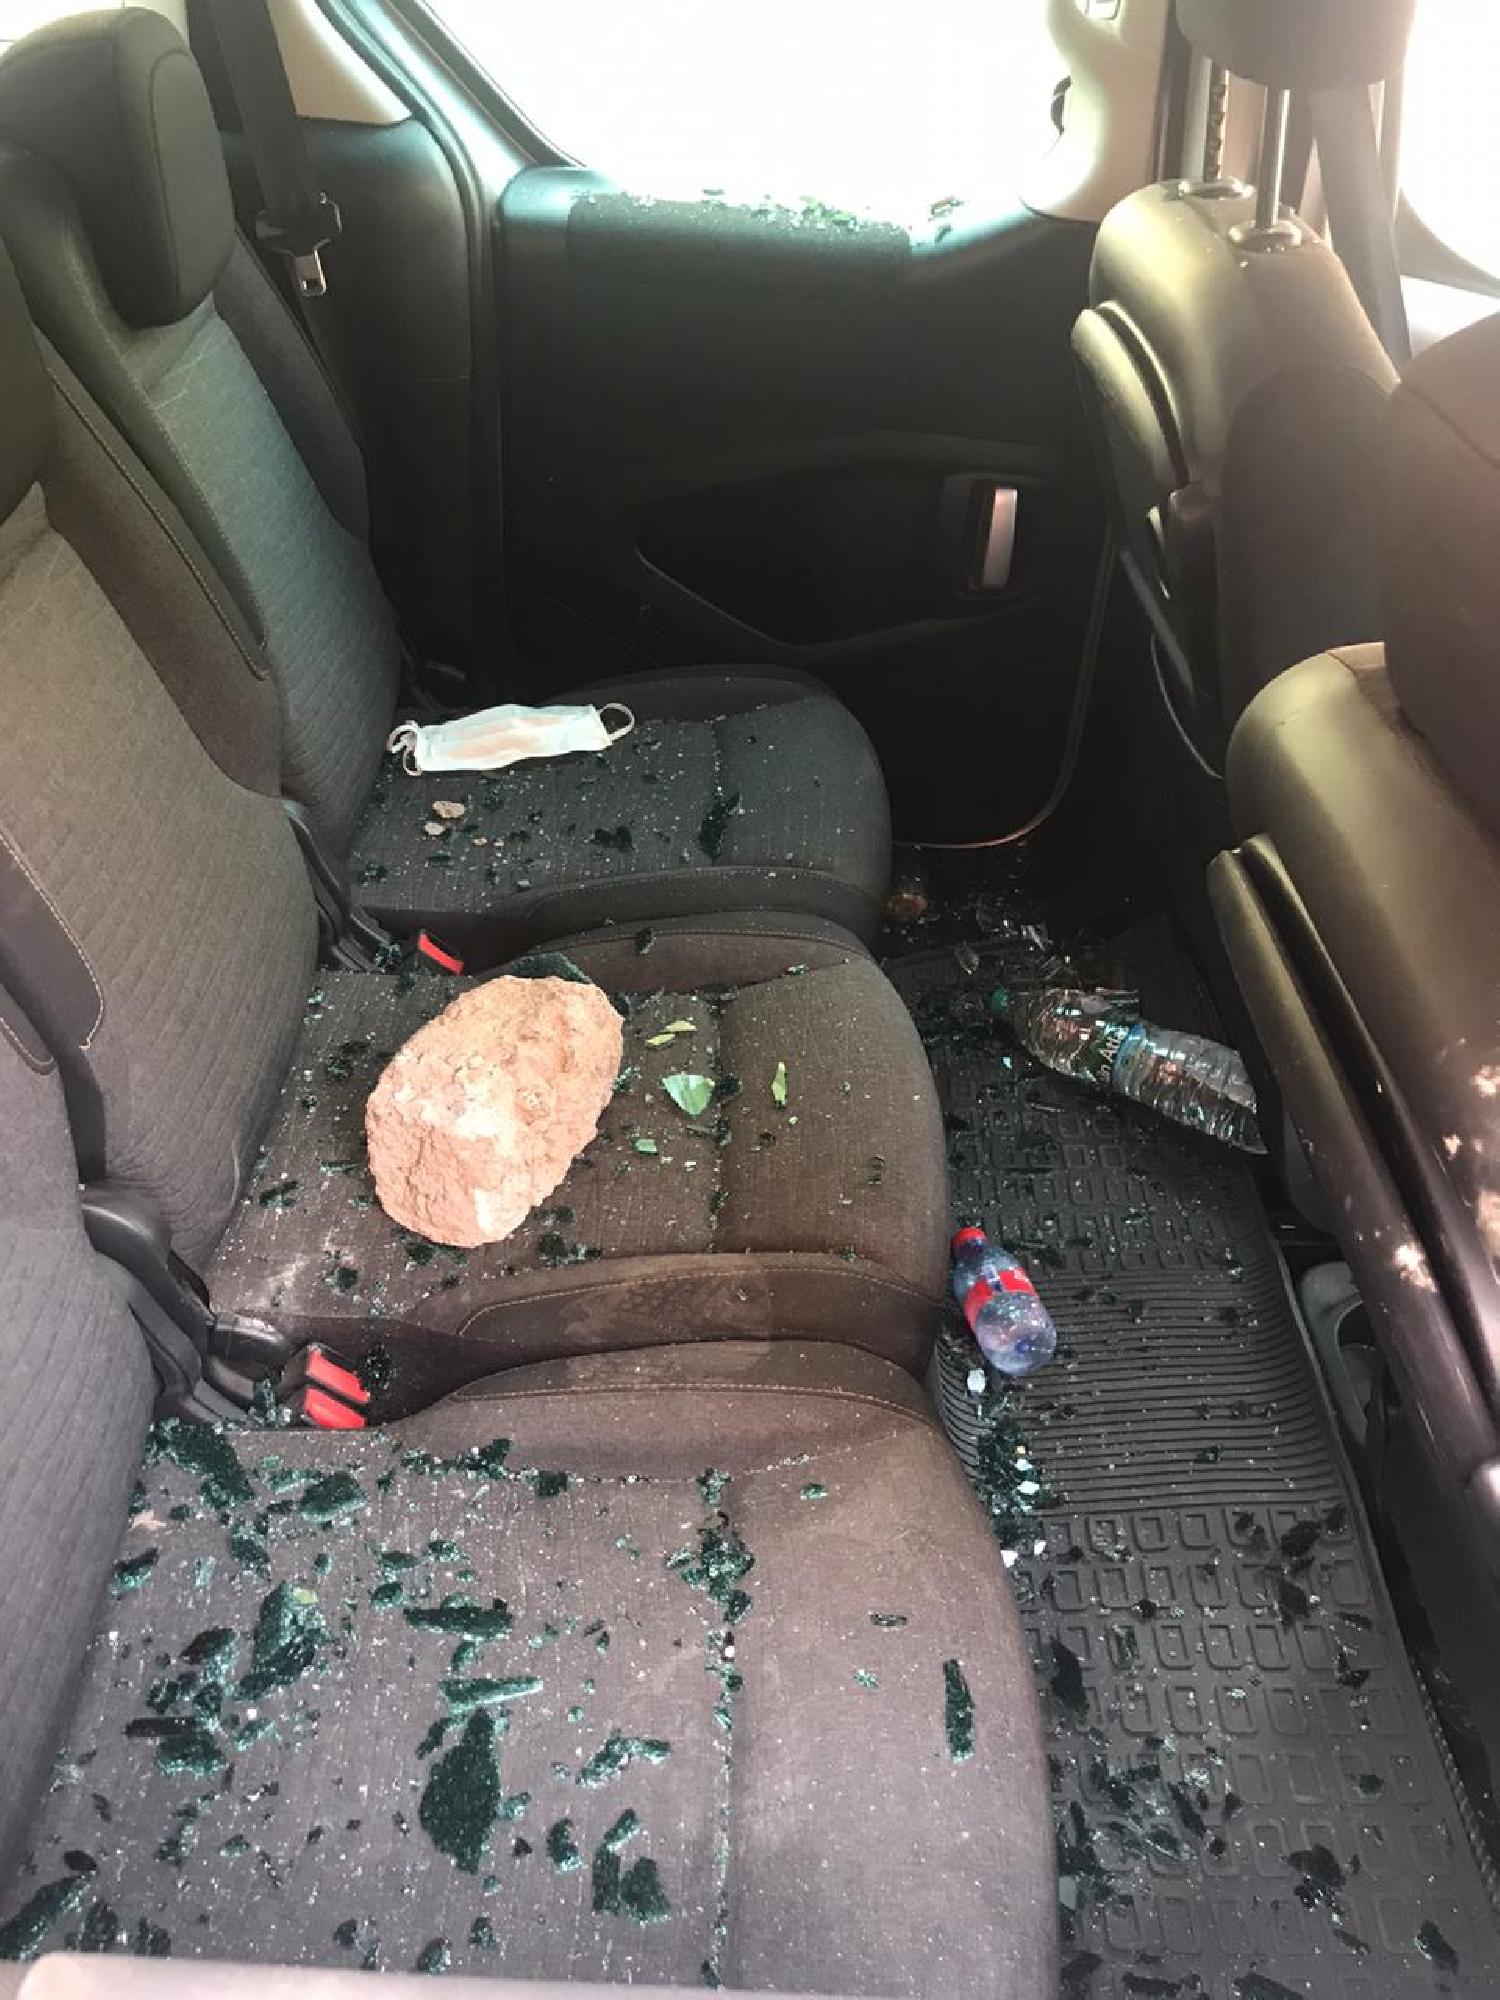 كسر زجاج سيارة مقاول وسرقة محتوياتها في ثاني أيام العيد بالمدينة العتيقة لمراكش